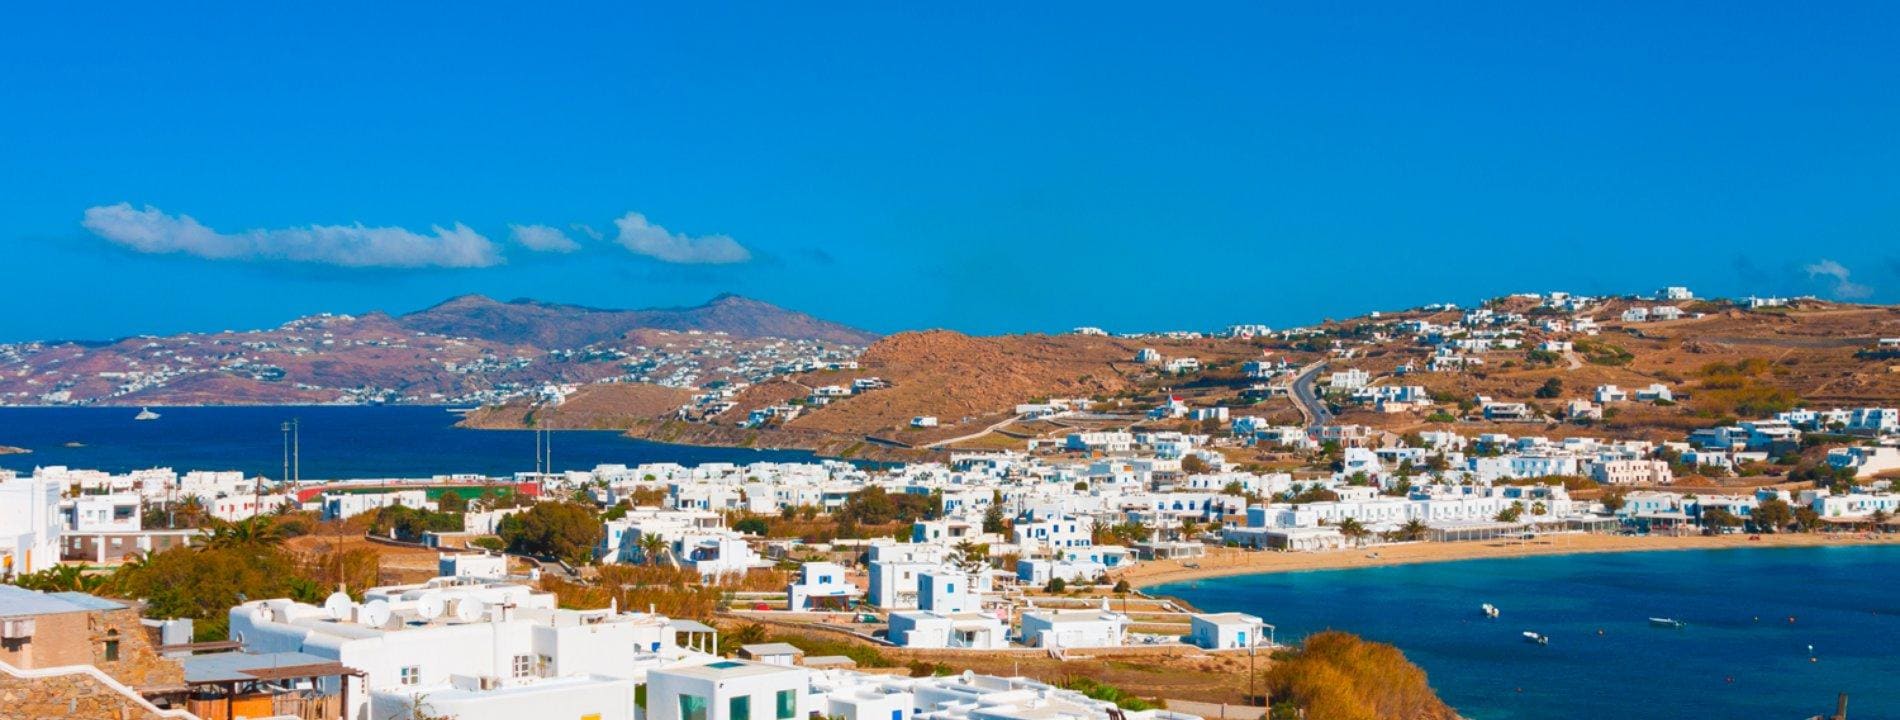 Vacanze a Mykonos | Eden Viaggi